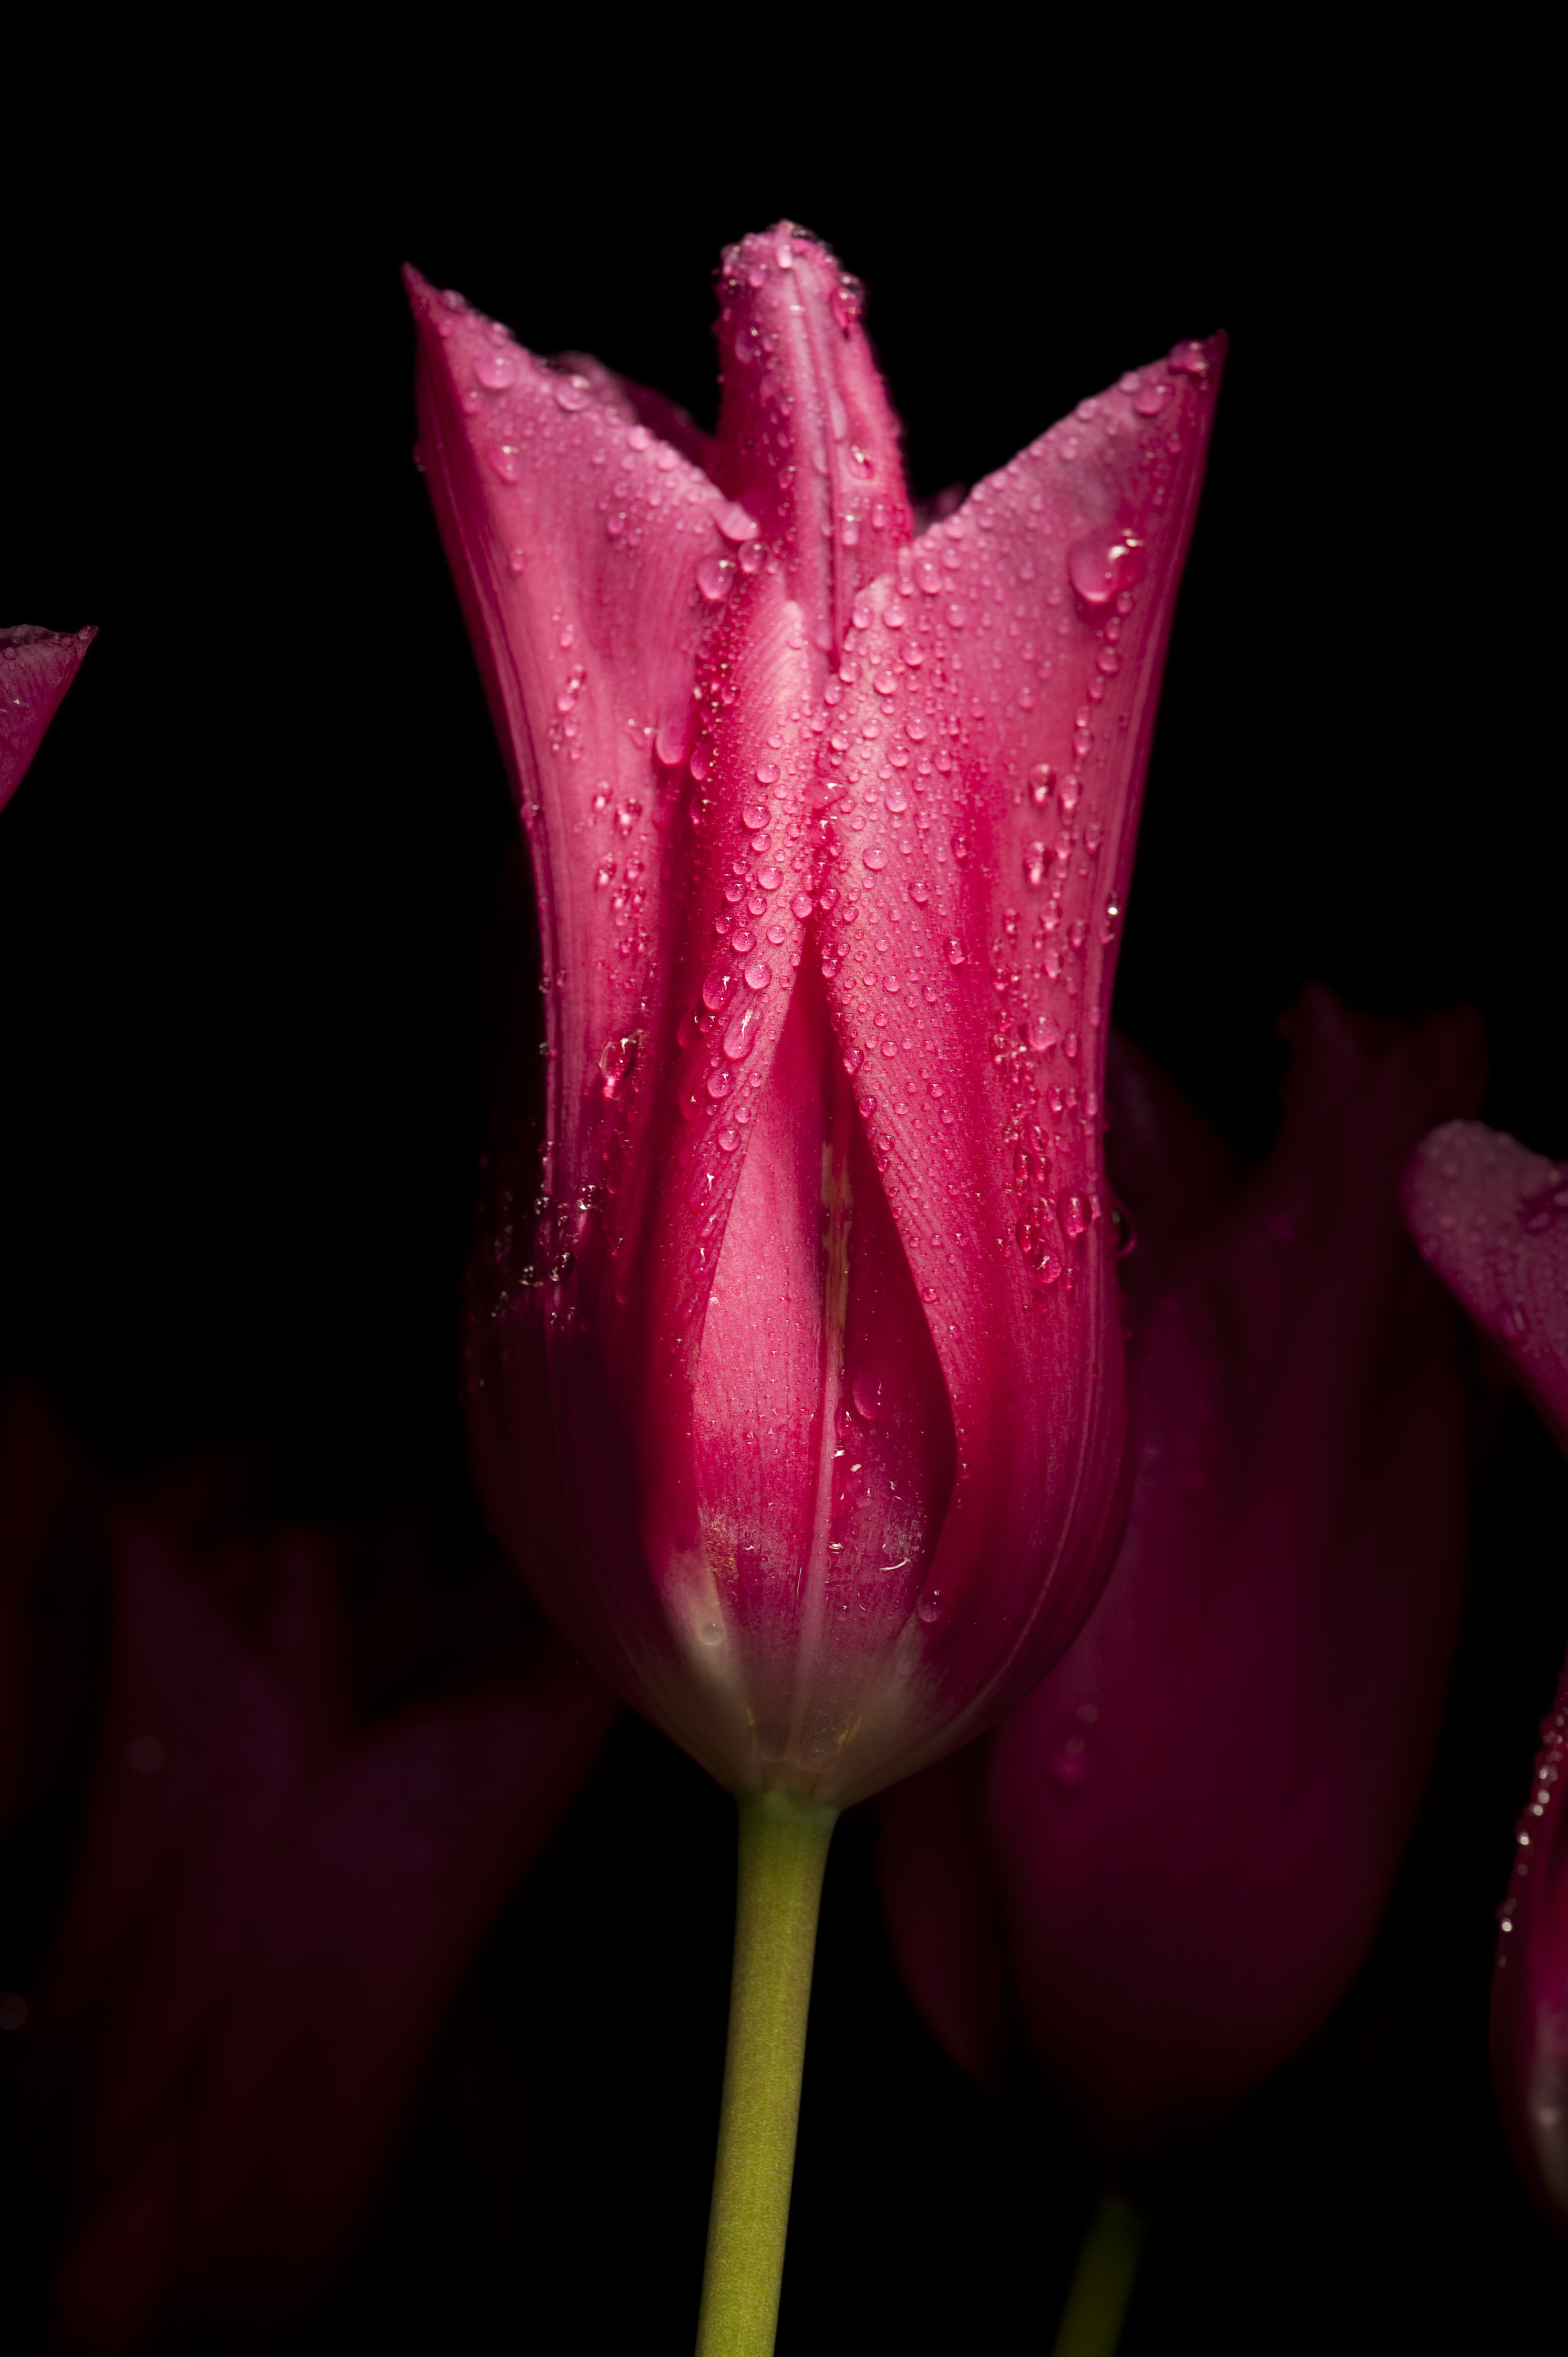   &nbsp; Tulip | Tulipe  